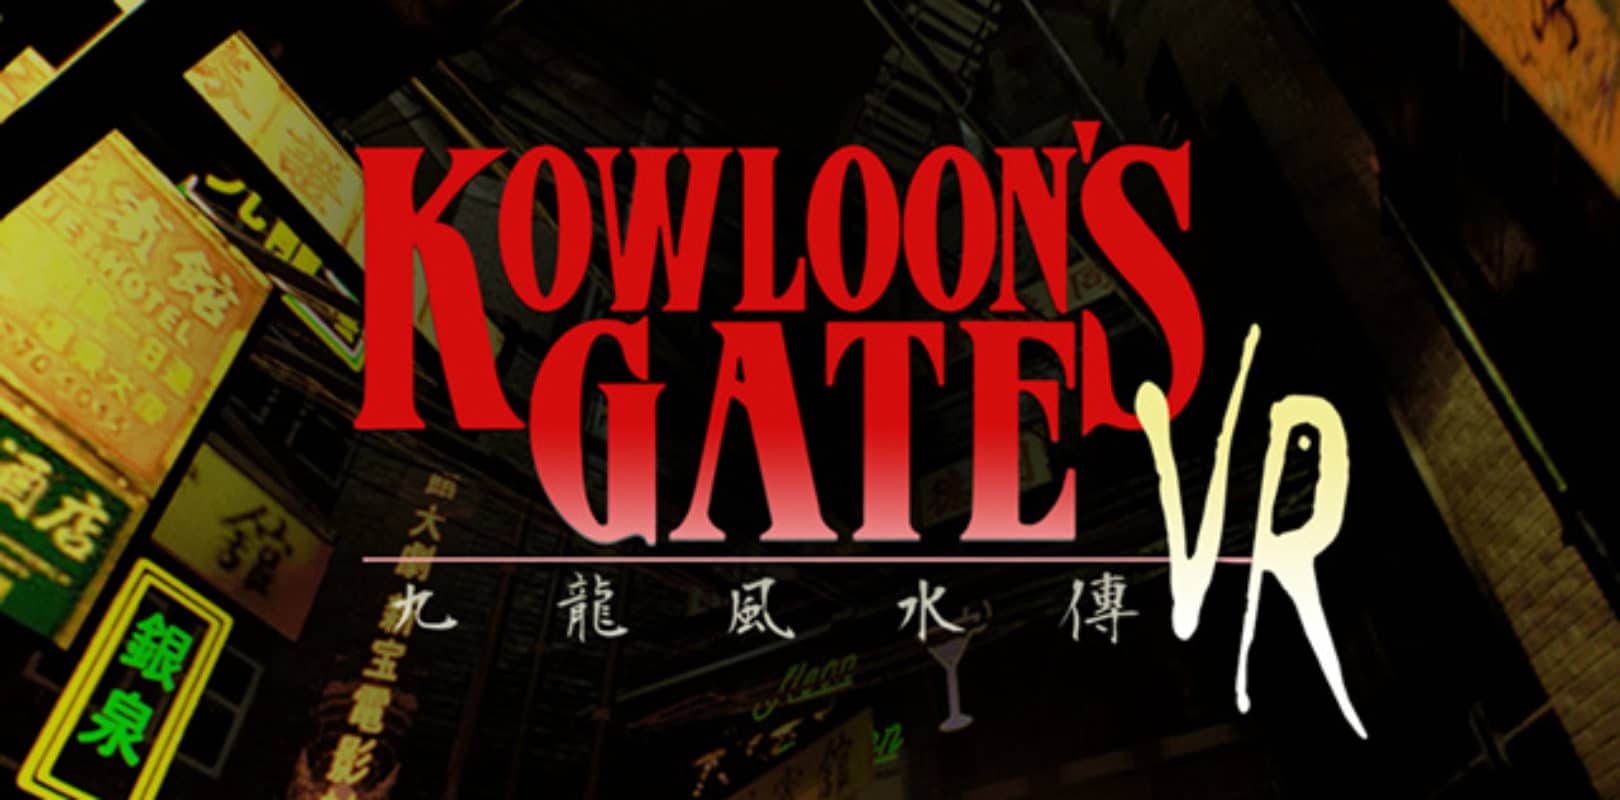 Kowloon's Gate VR Suzaku